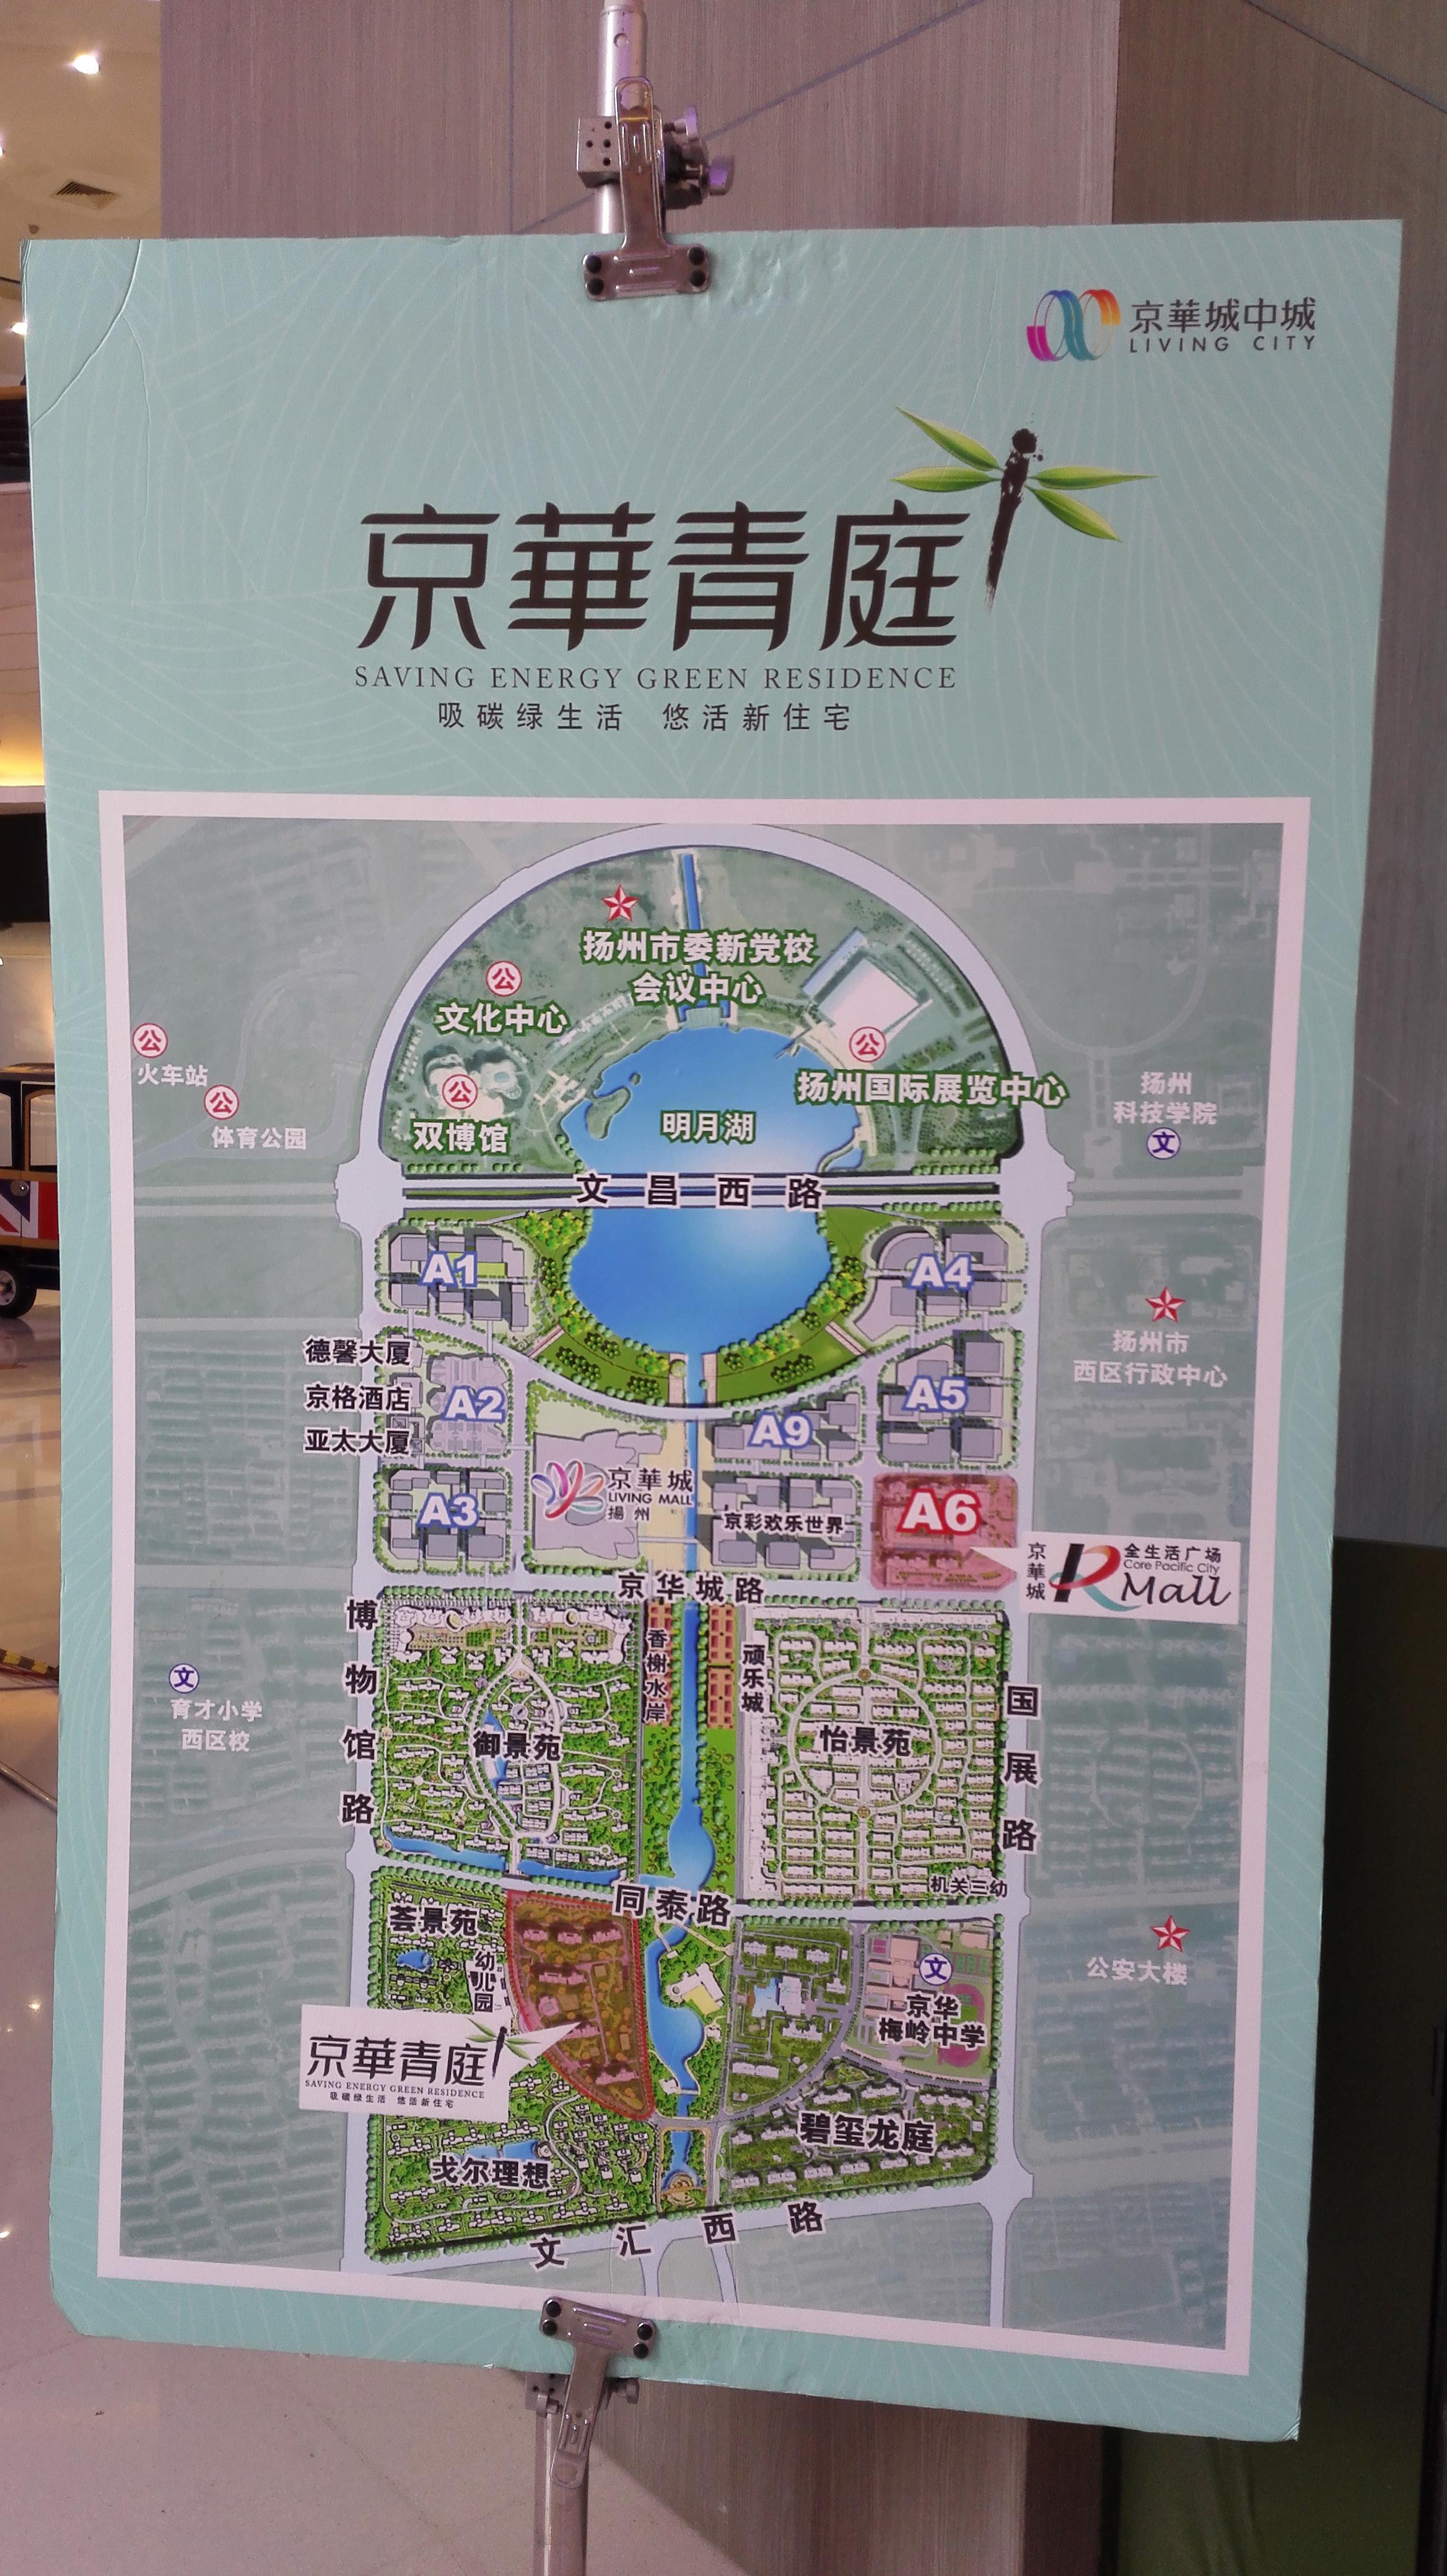 坊 钟书阁 华懋购物中心京华城是台湾开发商开发的,十多年前进入扬州